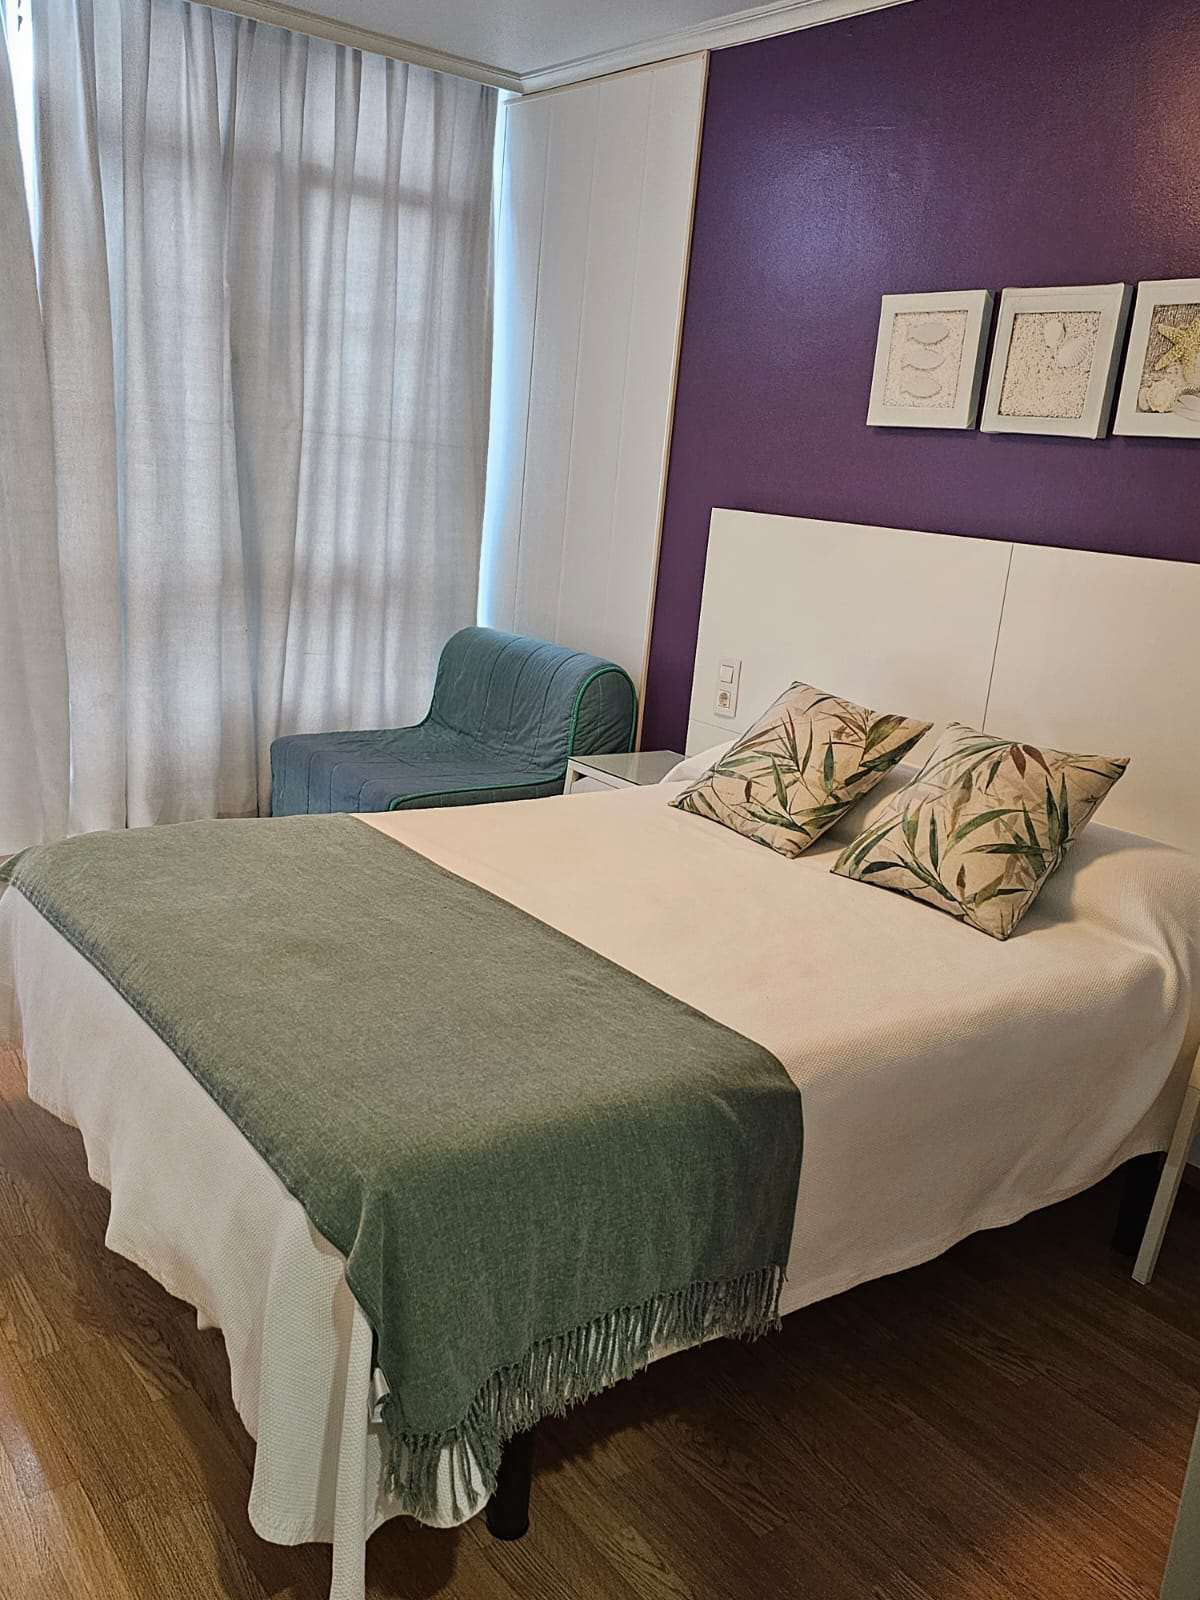 habitación doble con una cama de matrimonio con mantas de color verde y blanco, y la pared en color violeta. La cama está hecha y tiene varios cuadros de decoración encima de la misma